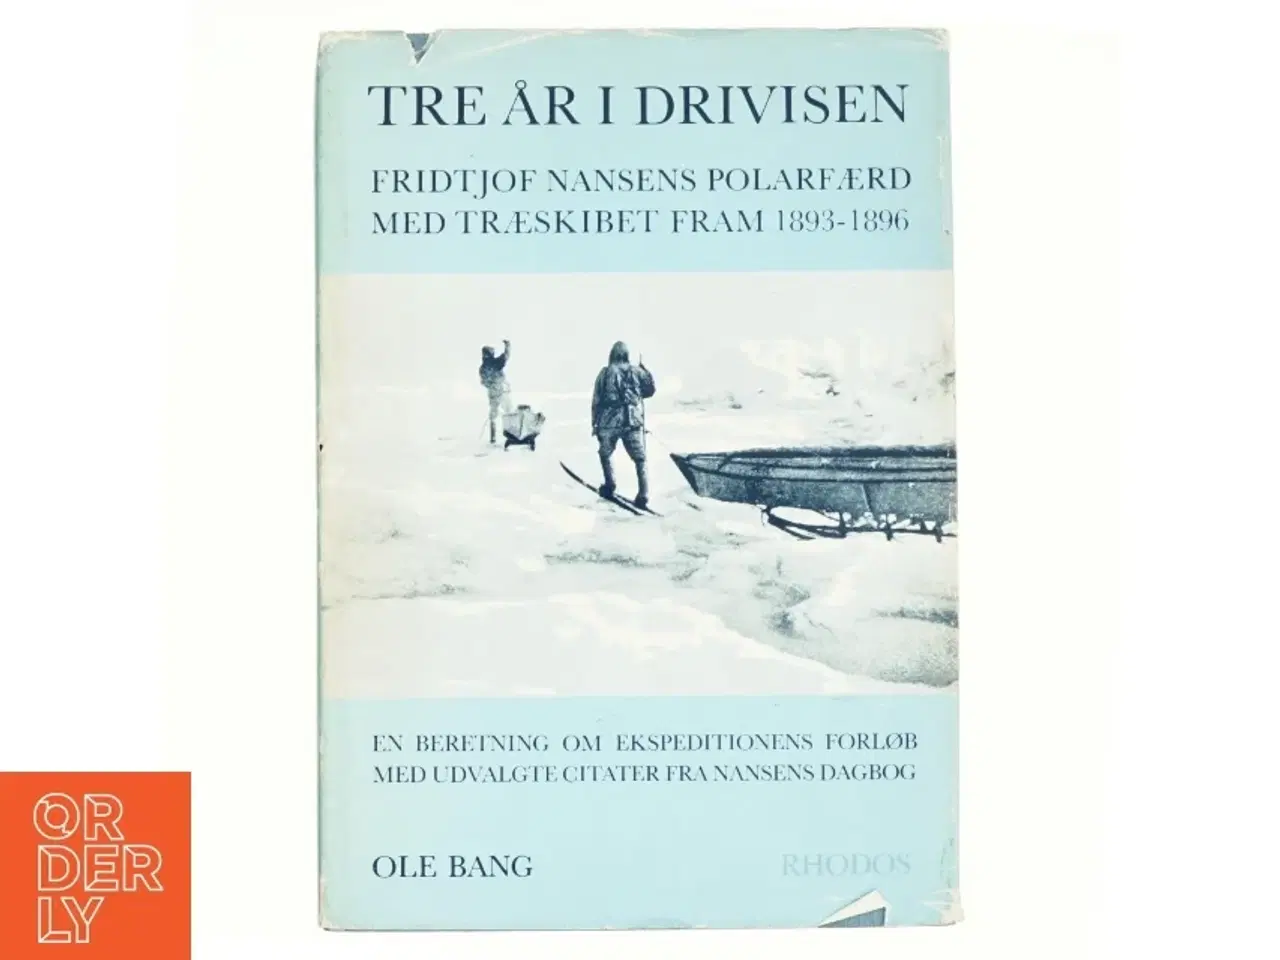 Billede 1 - Tre år i drivisen af Ole Bang (bog)